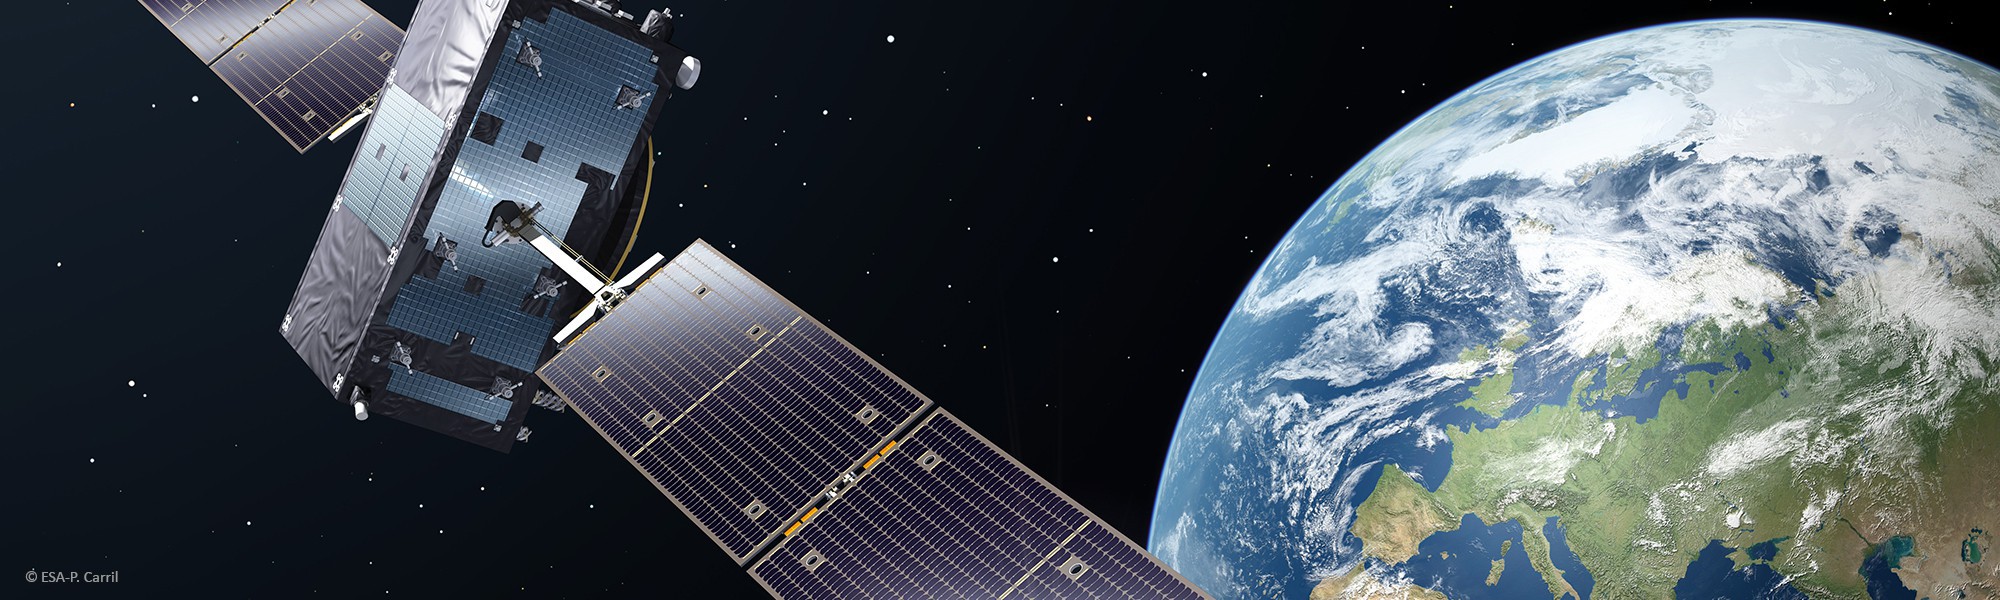 Galileo Satellite in Orbit